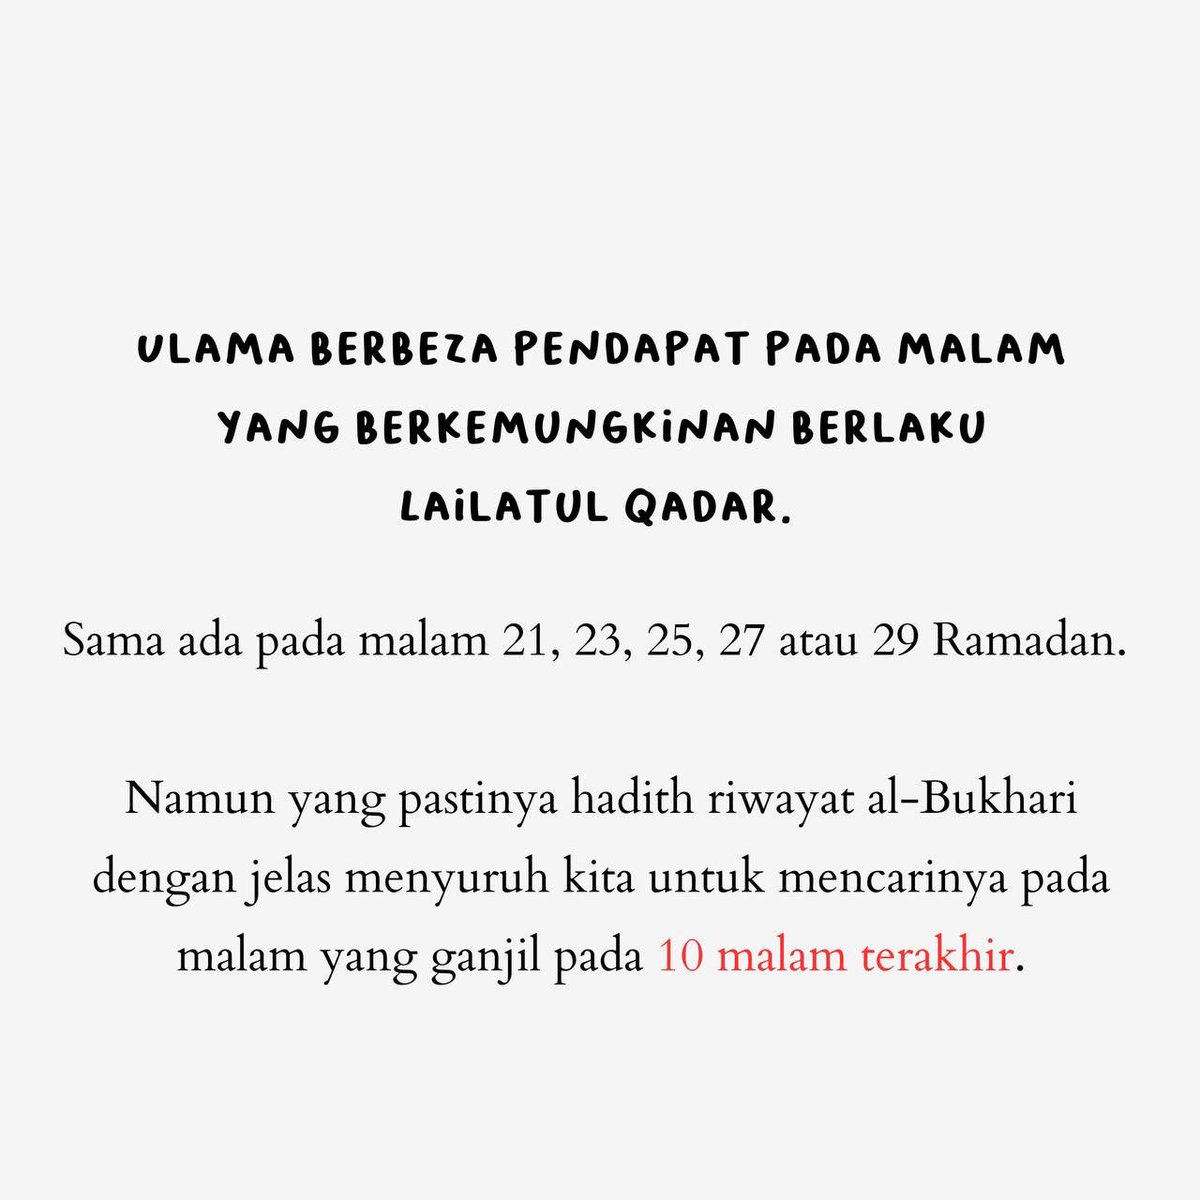 Malam ini ialah 27 Ramadan. 

Malam yang paling diharapkan untuk berlakunya Lailatul Qadar.

Manfaatkan malam ini dengan sebaik-baiknya! 1/4